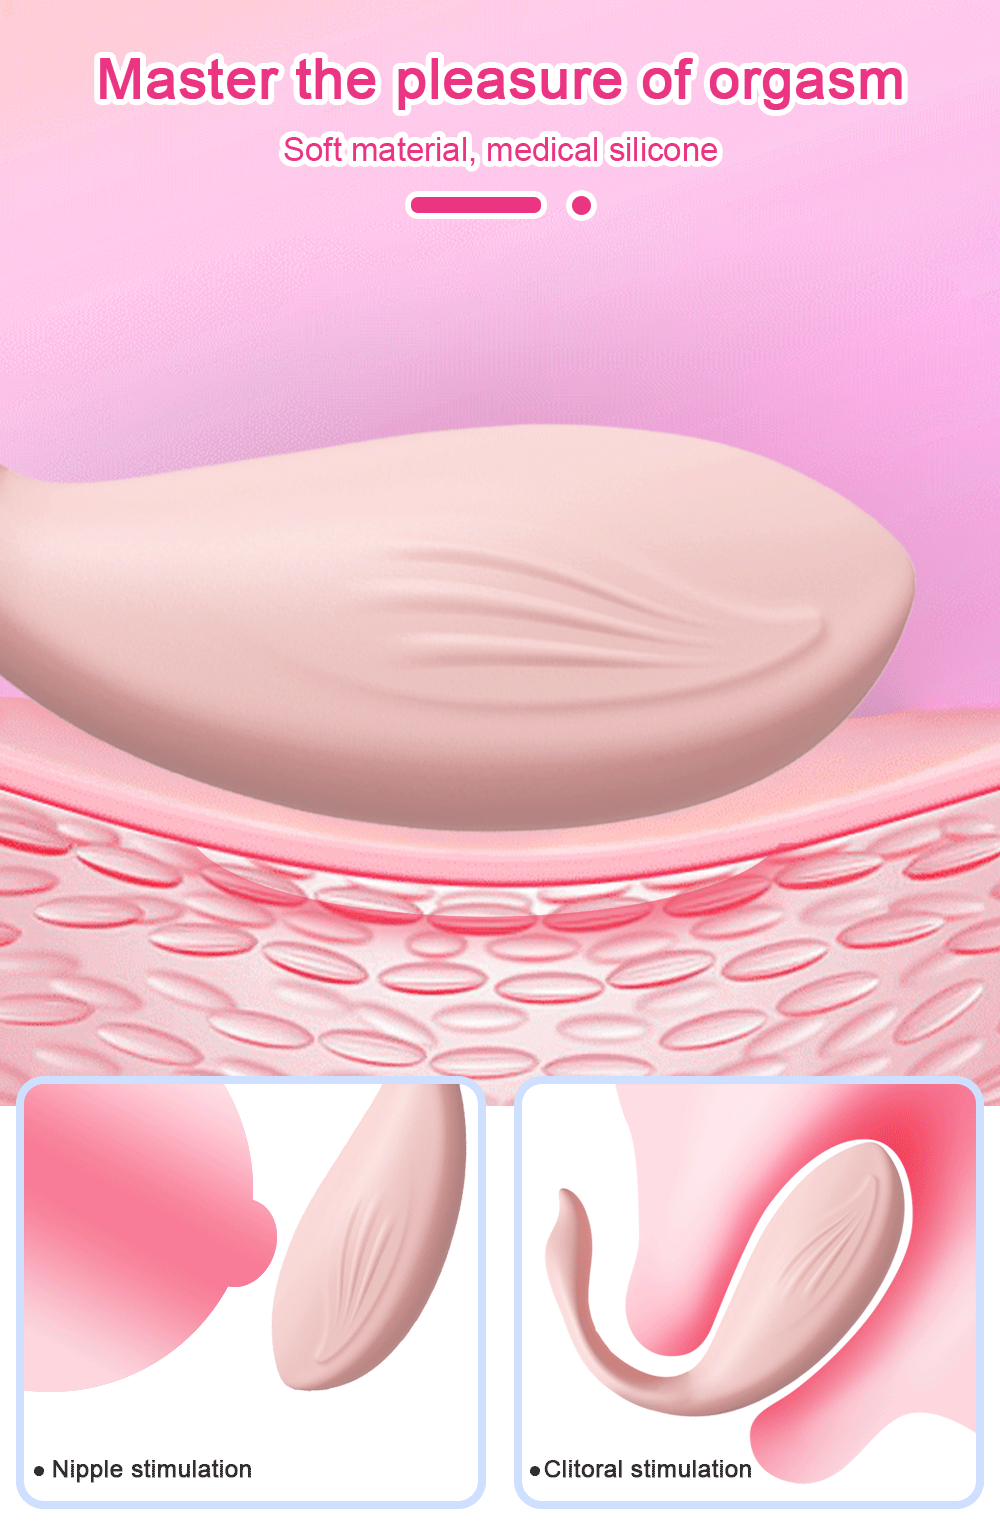 draagbare g spot dildo beheerst het genot van het orgasme